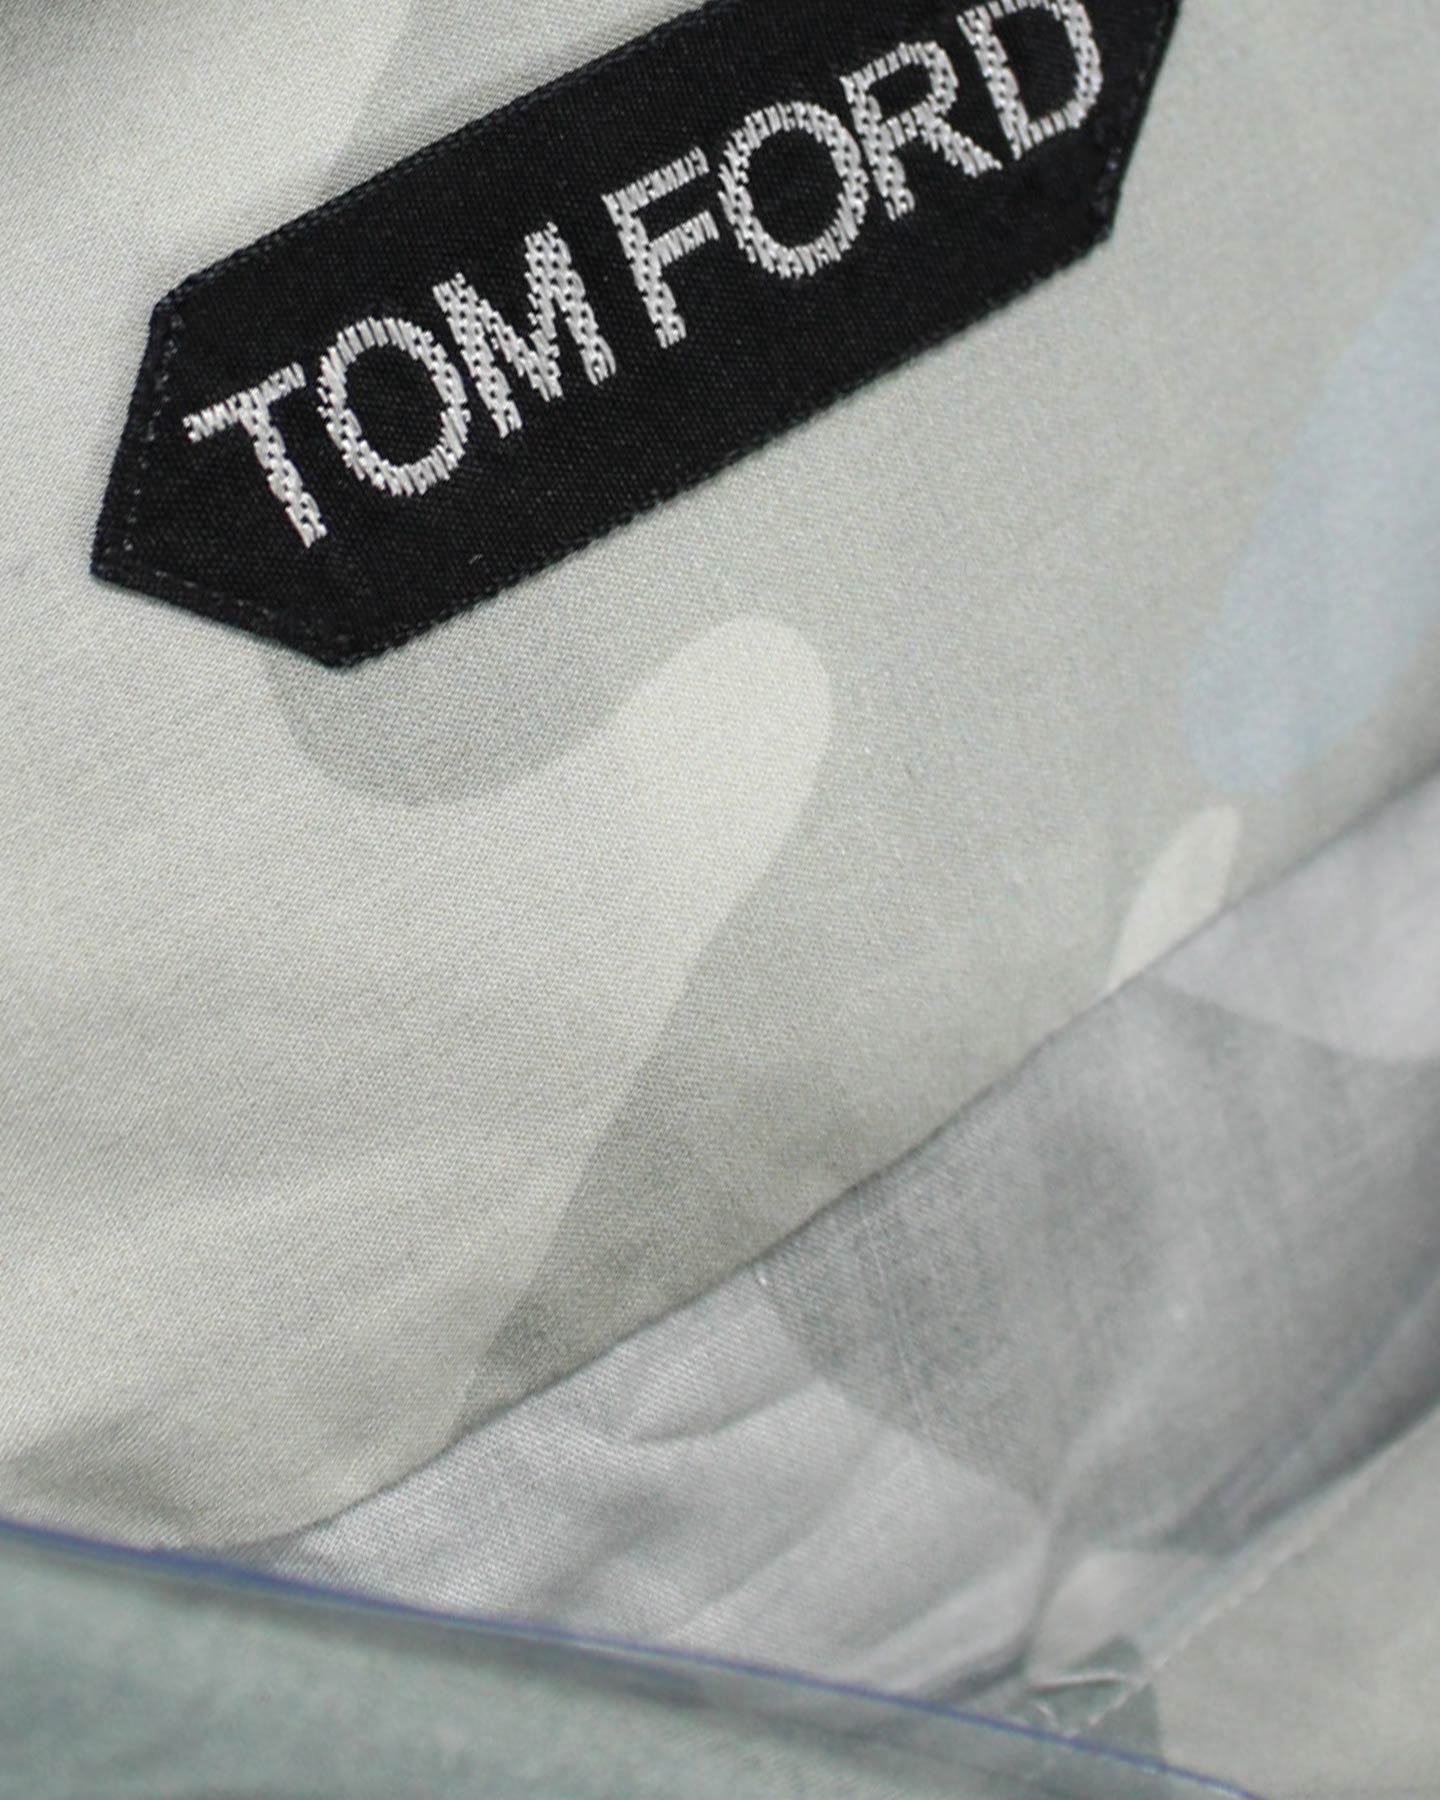 Tom Ford Sport Shirt Ceylon Gray Camo